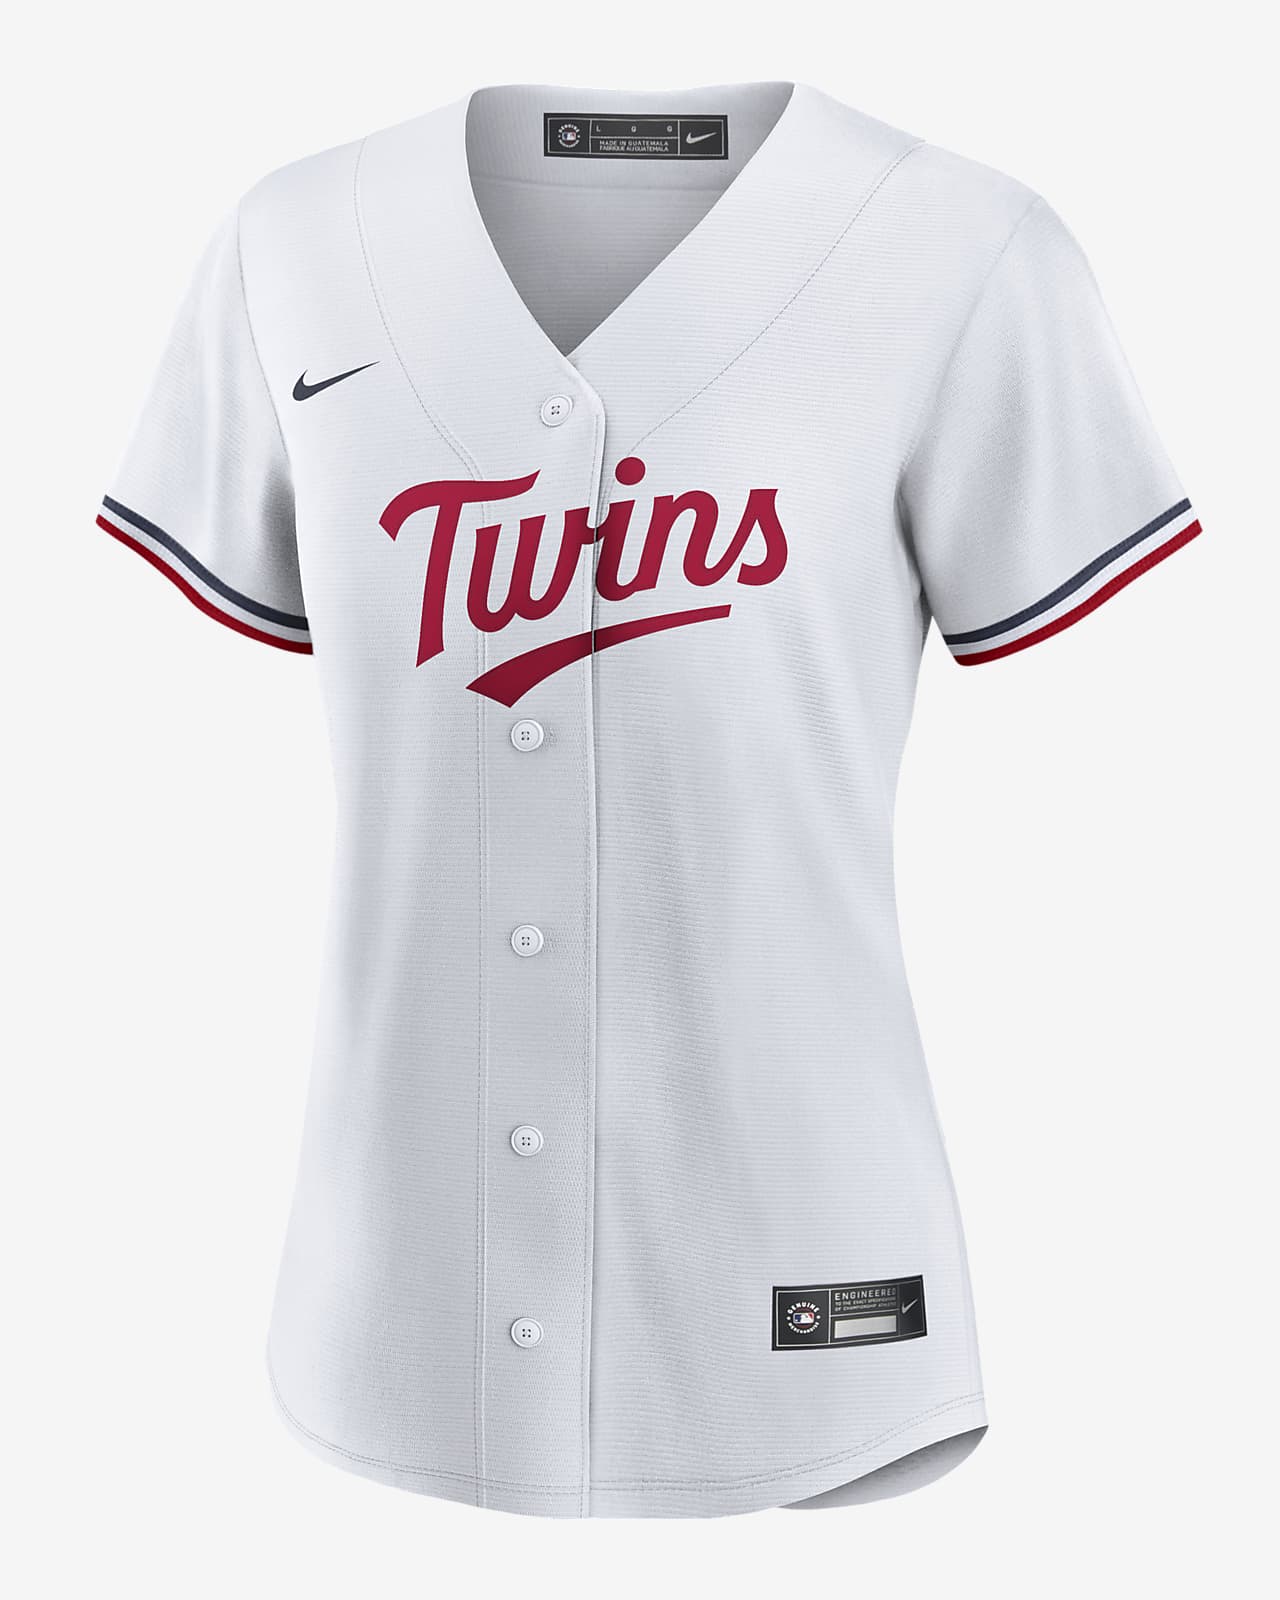 twins baseball jersey